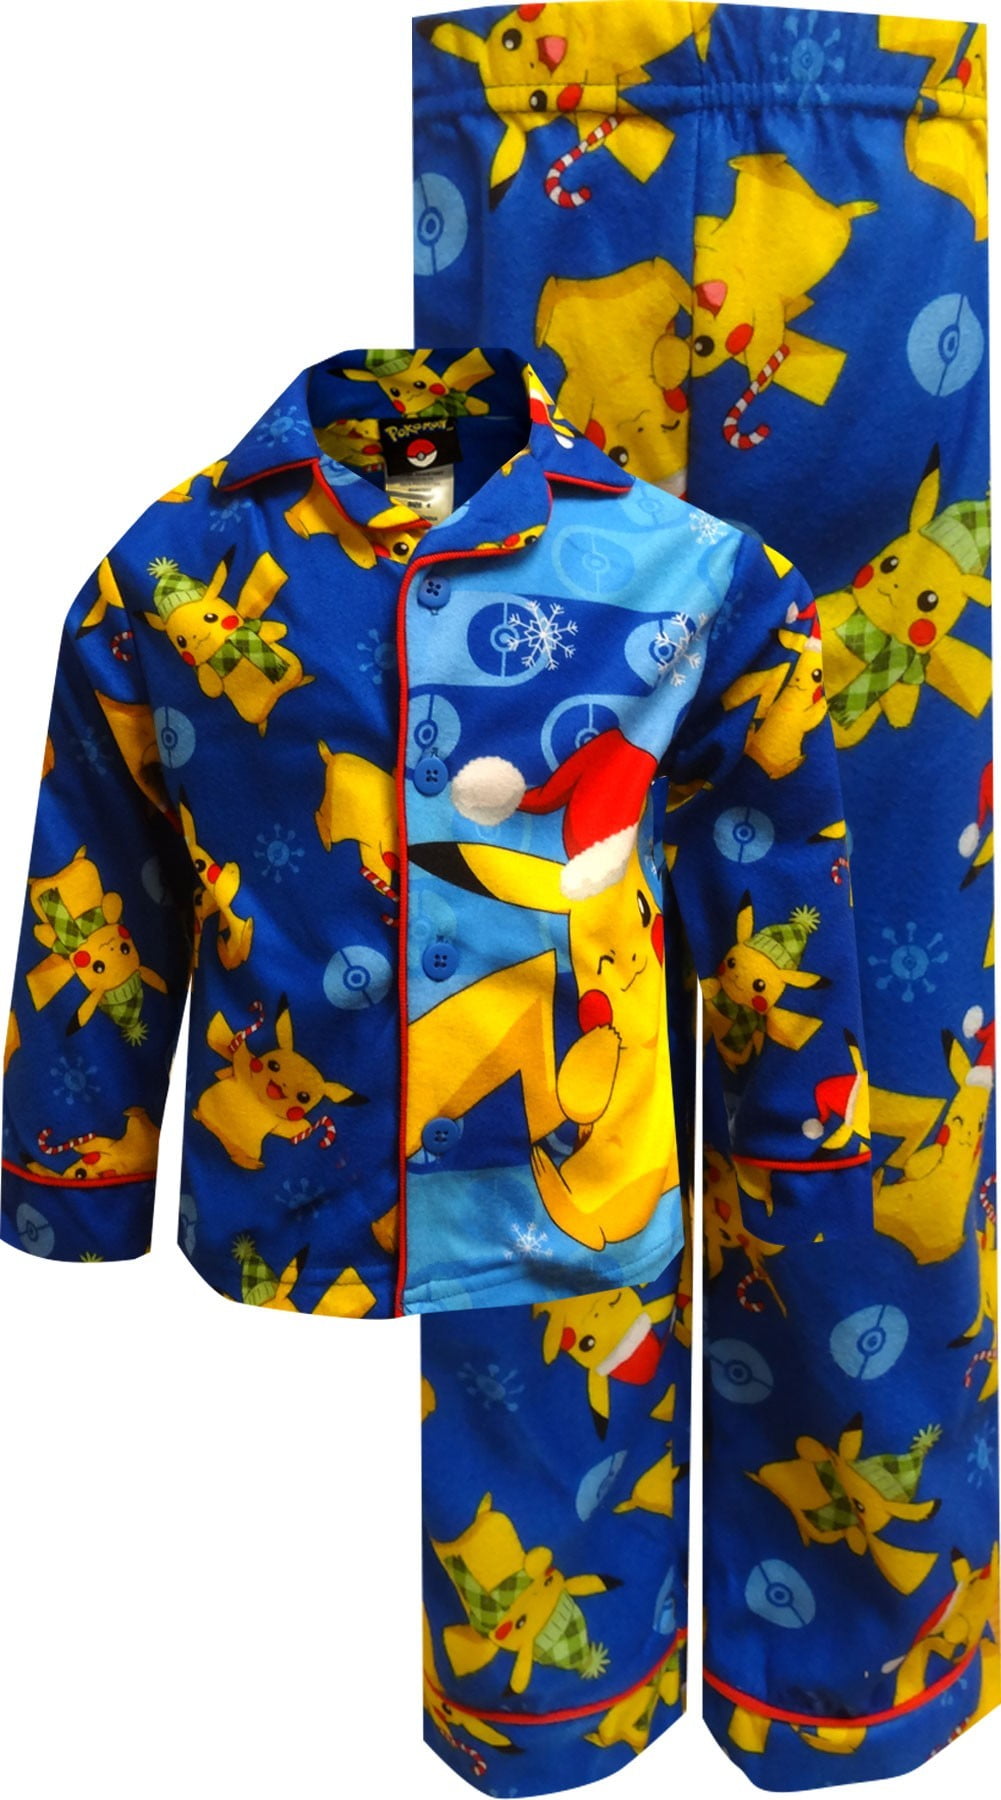 Pokemon Gotta Catch'em All 4-Piece Pajama Set Size 10 or 12 NWT $42 RV 